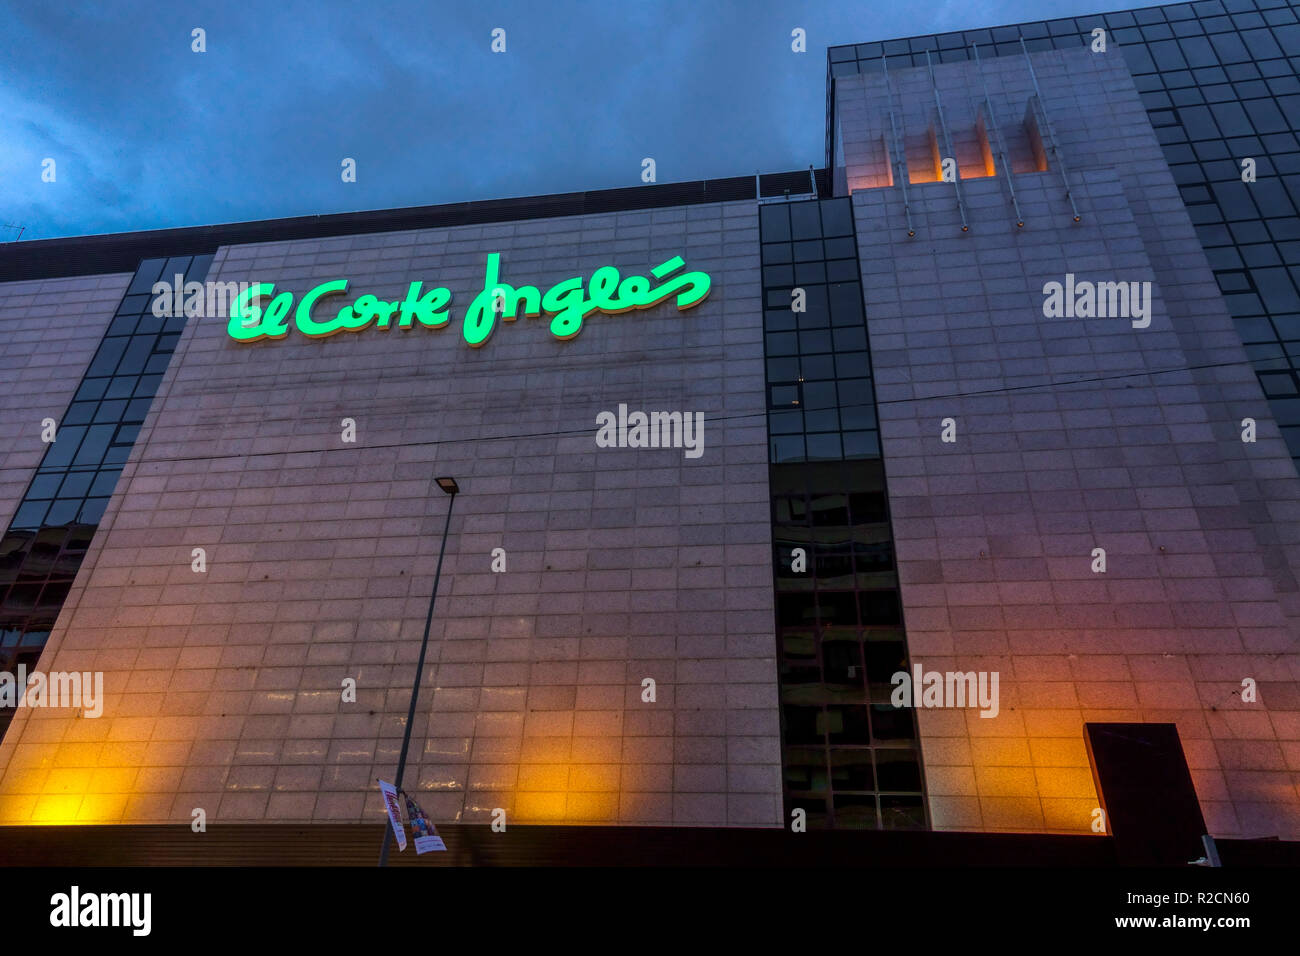 El Corte Ingles, Shopping Centre, Alicante, Spain Stock Photo